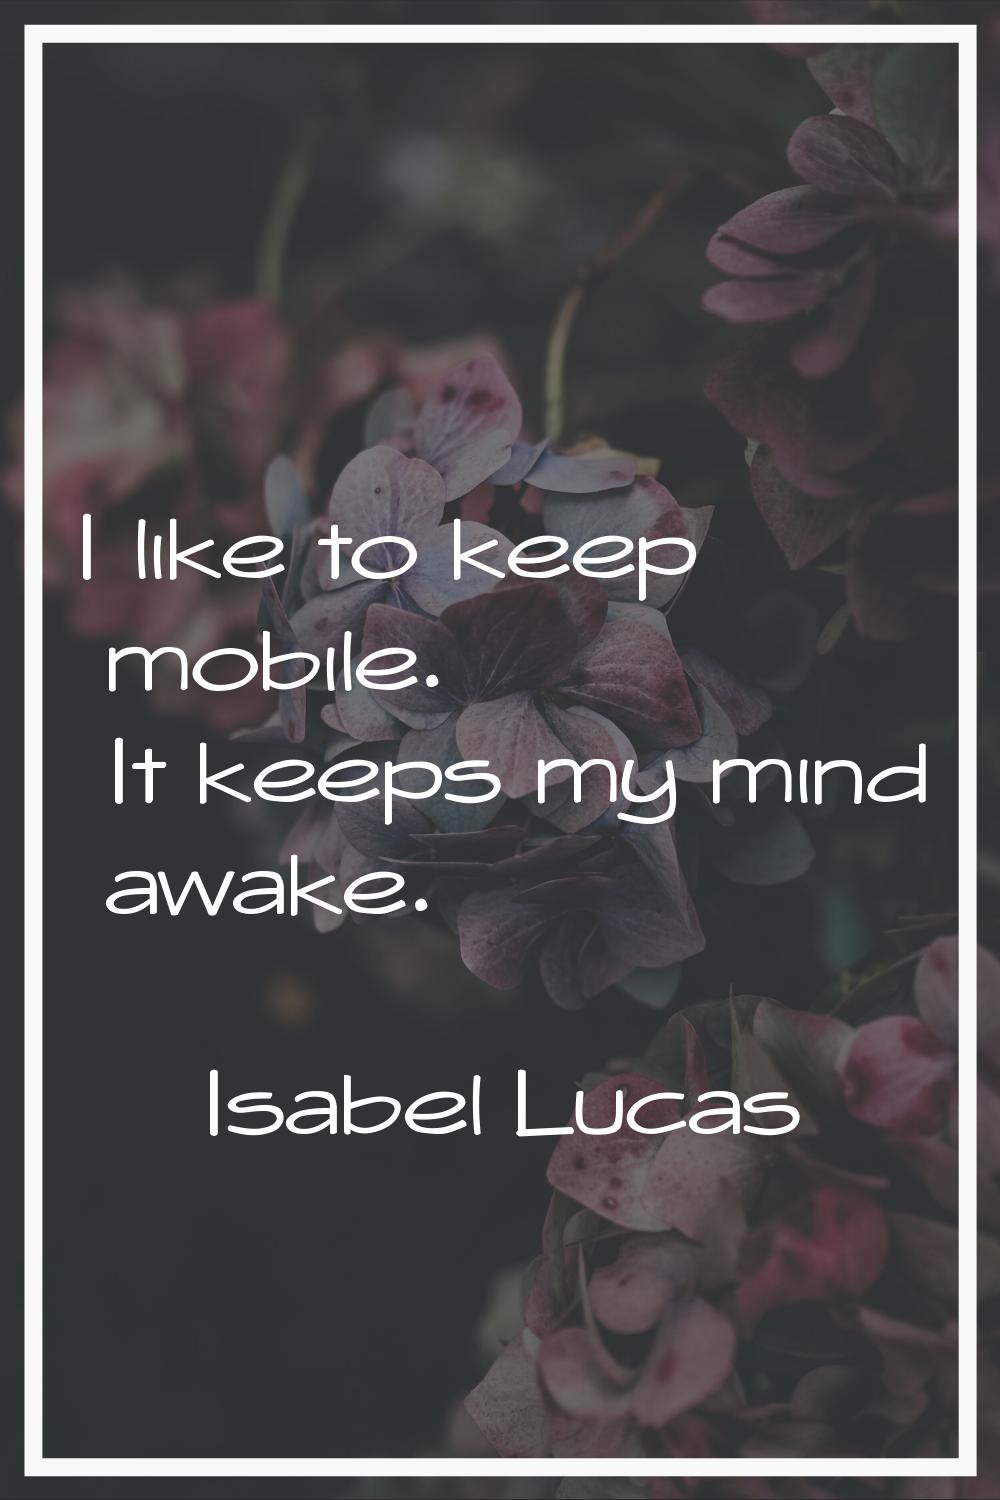 I like to keep mobile. It keeps my mind awake.